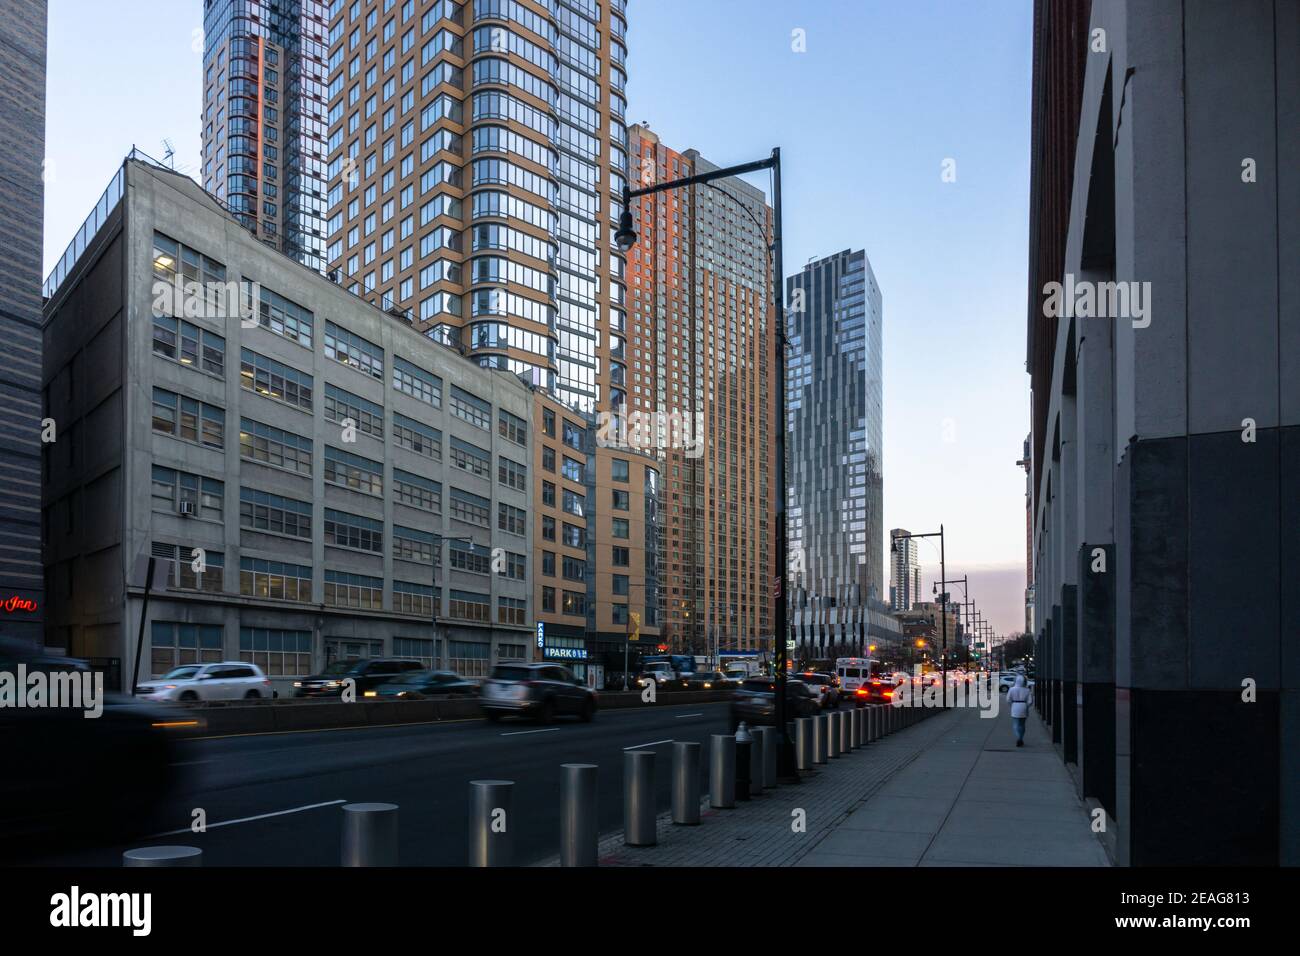 New York, USA - 21. Januar 2021: Straßenansicht der Flatbush Avenue in Brooklyn, New York mit umliegenden hohen Gebäuden Stockfoto